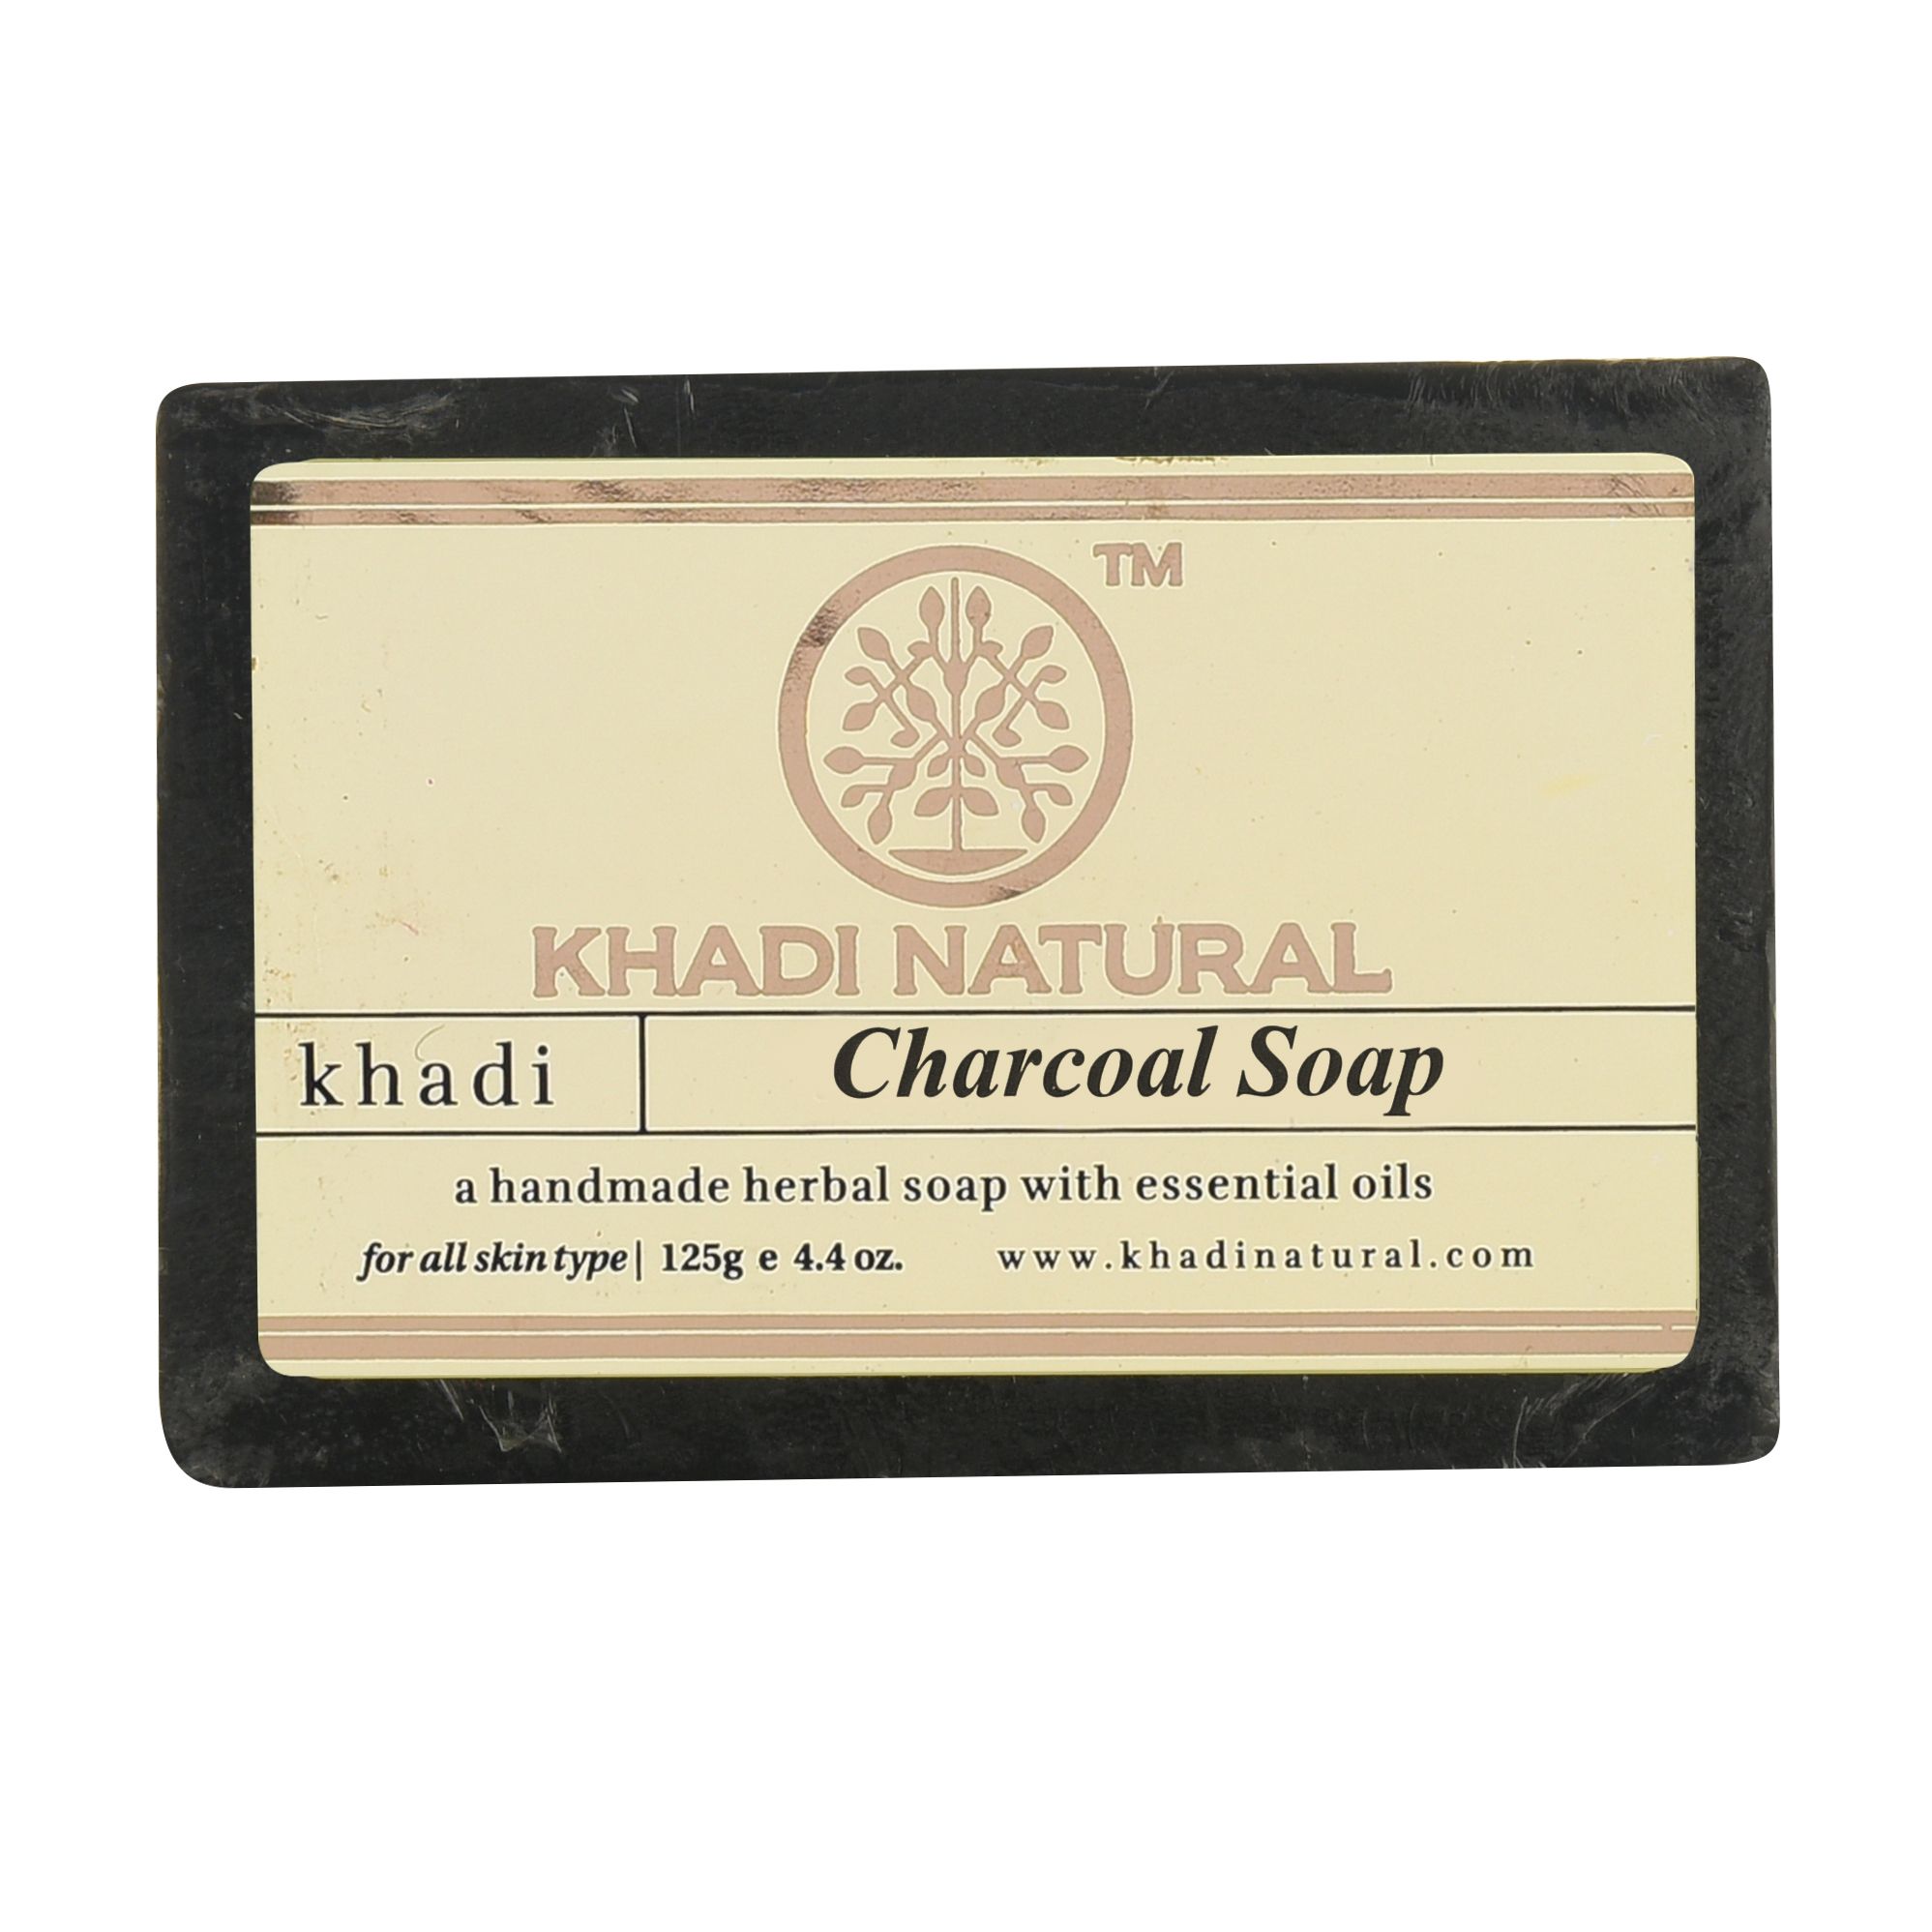 Кхади мыло ручной работы с древесным углем, 125г. Khadi Charcoal Soap.